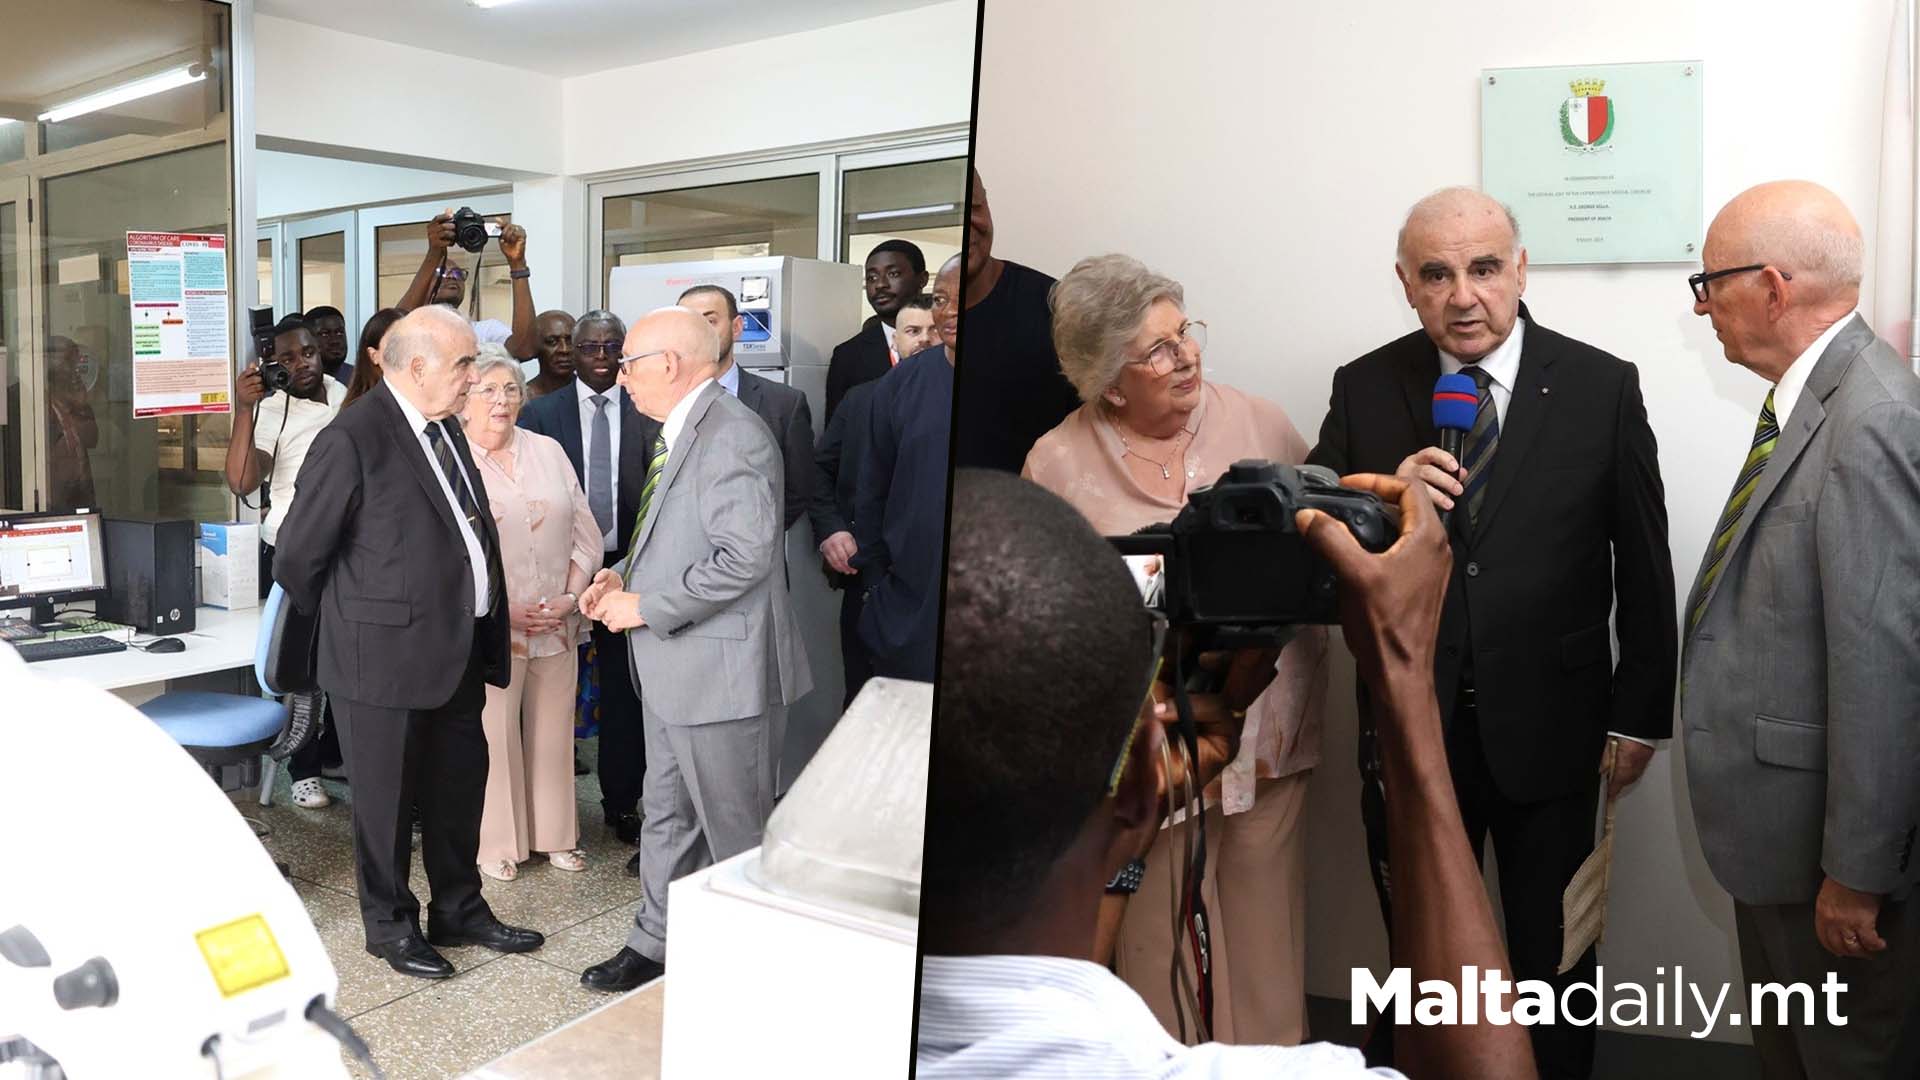 President Of Malta Visits Hopexchange Medical Centre In Ghana